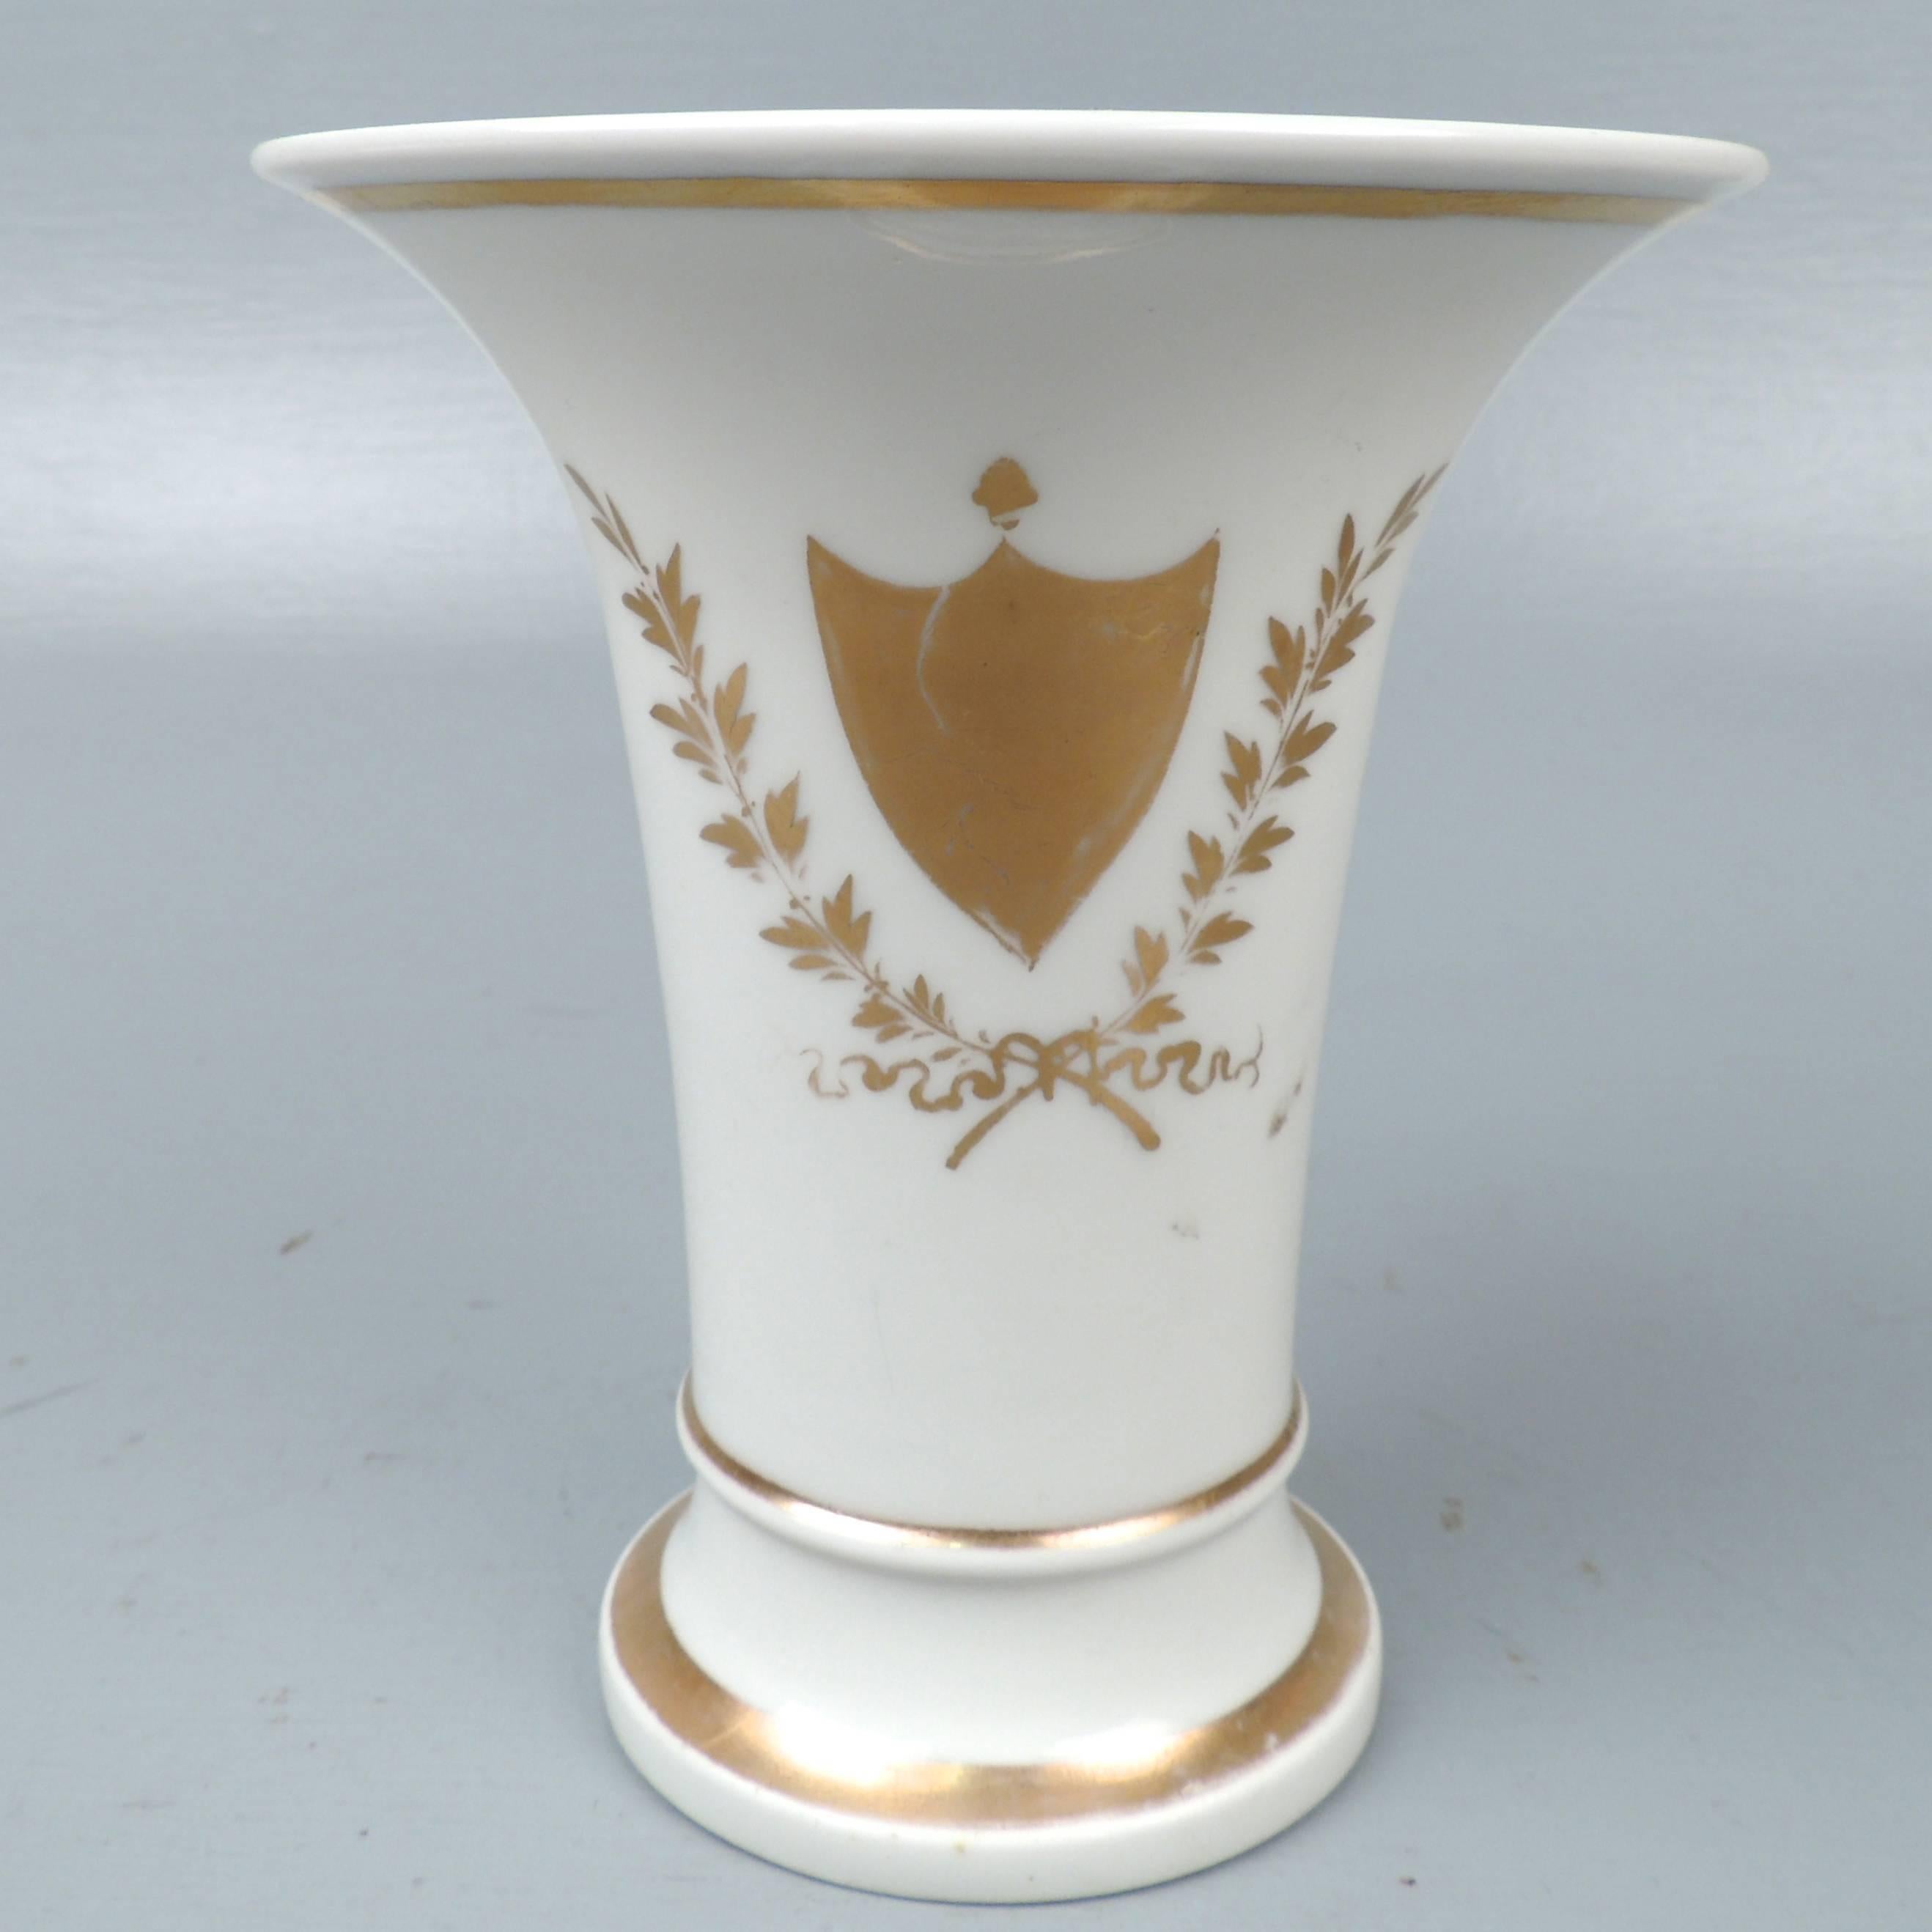 Un beau et rare vase en porcelaine Tucker et Hemphill du début du 19e siècle.

Le vase est décoré d'un dispositif de bouclier doré entouré d'un décor de feuilles, de branches et de rubans. (Notez également comment l'écusson rappelle les célèbres